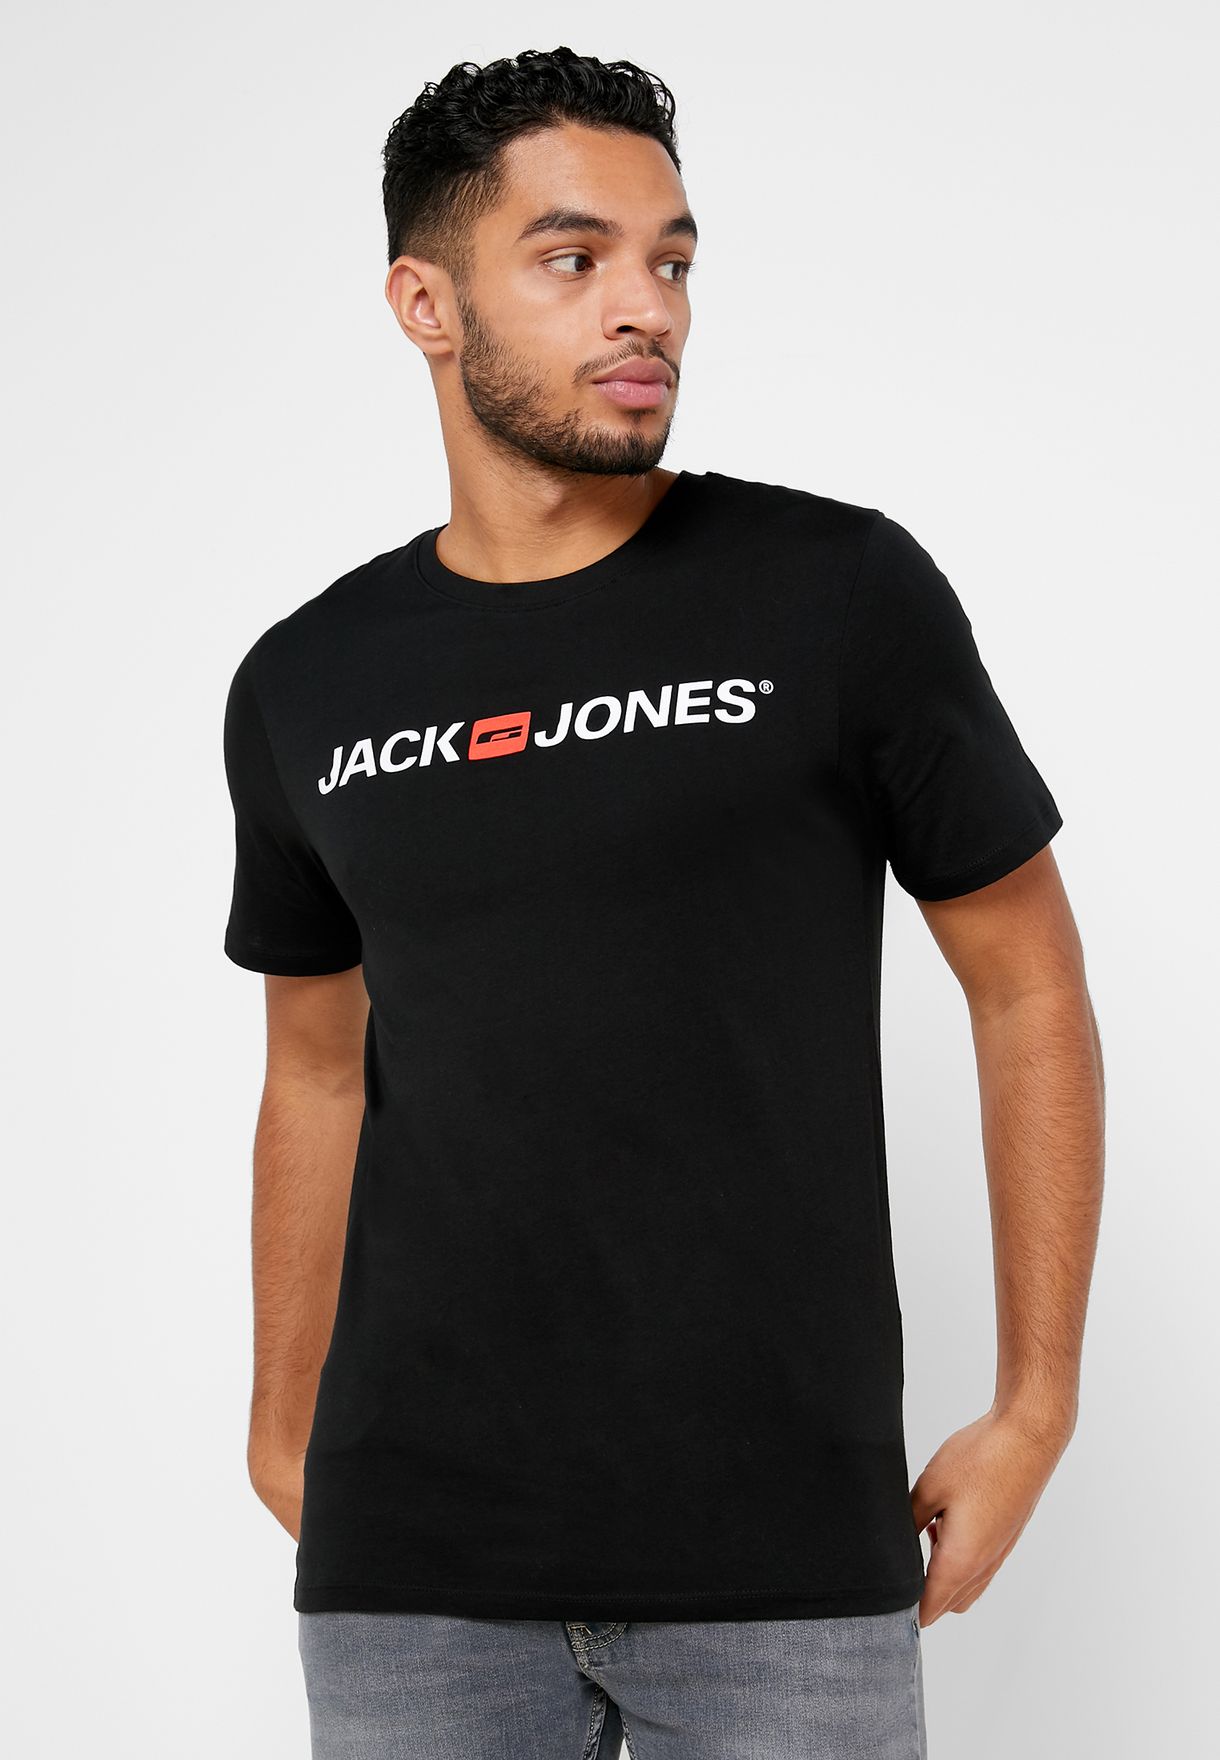 Reserveren Verandering rietje Jack & Jones men's T-shirt